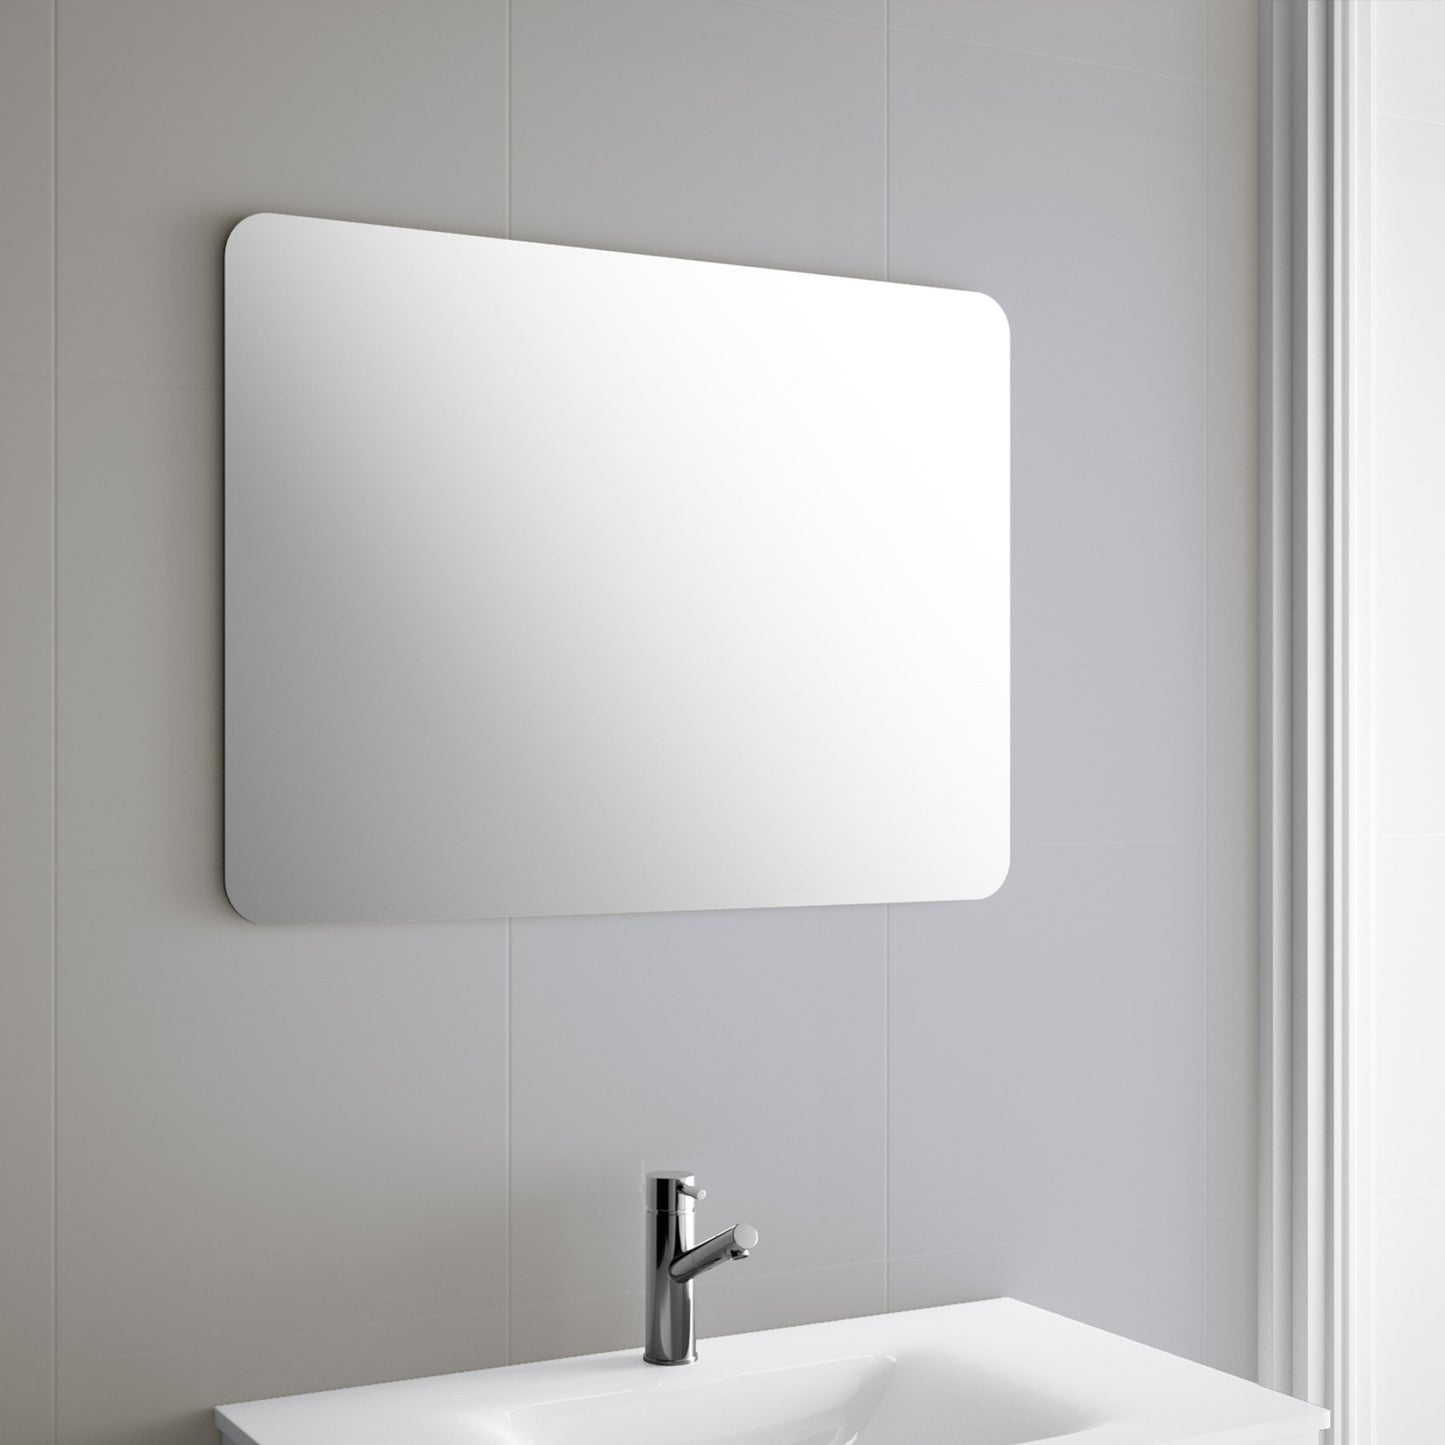 Mirror ROTA rectangular round corners horizontal/vertical installation